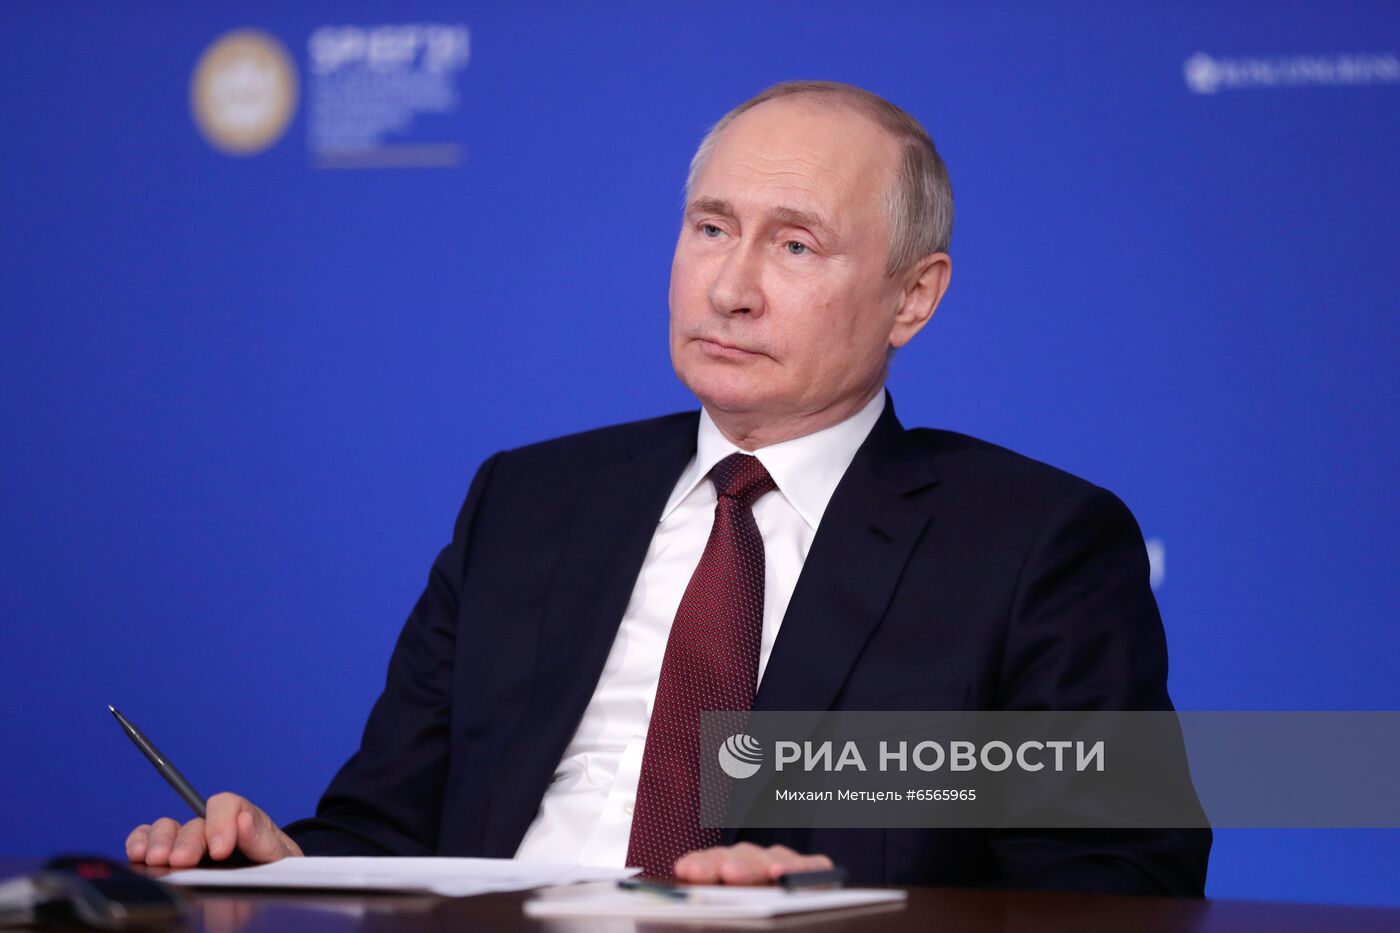 Президент РФ В. Путин провел встречу с руководителями ведущих мировых информационных агентств